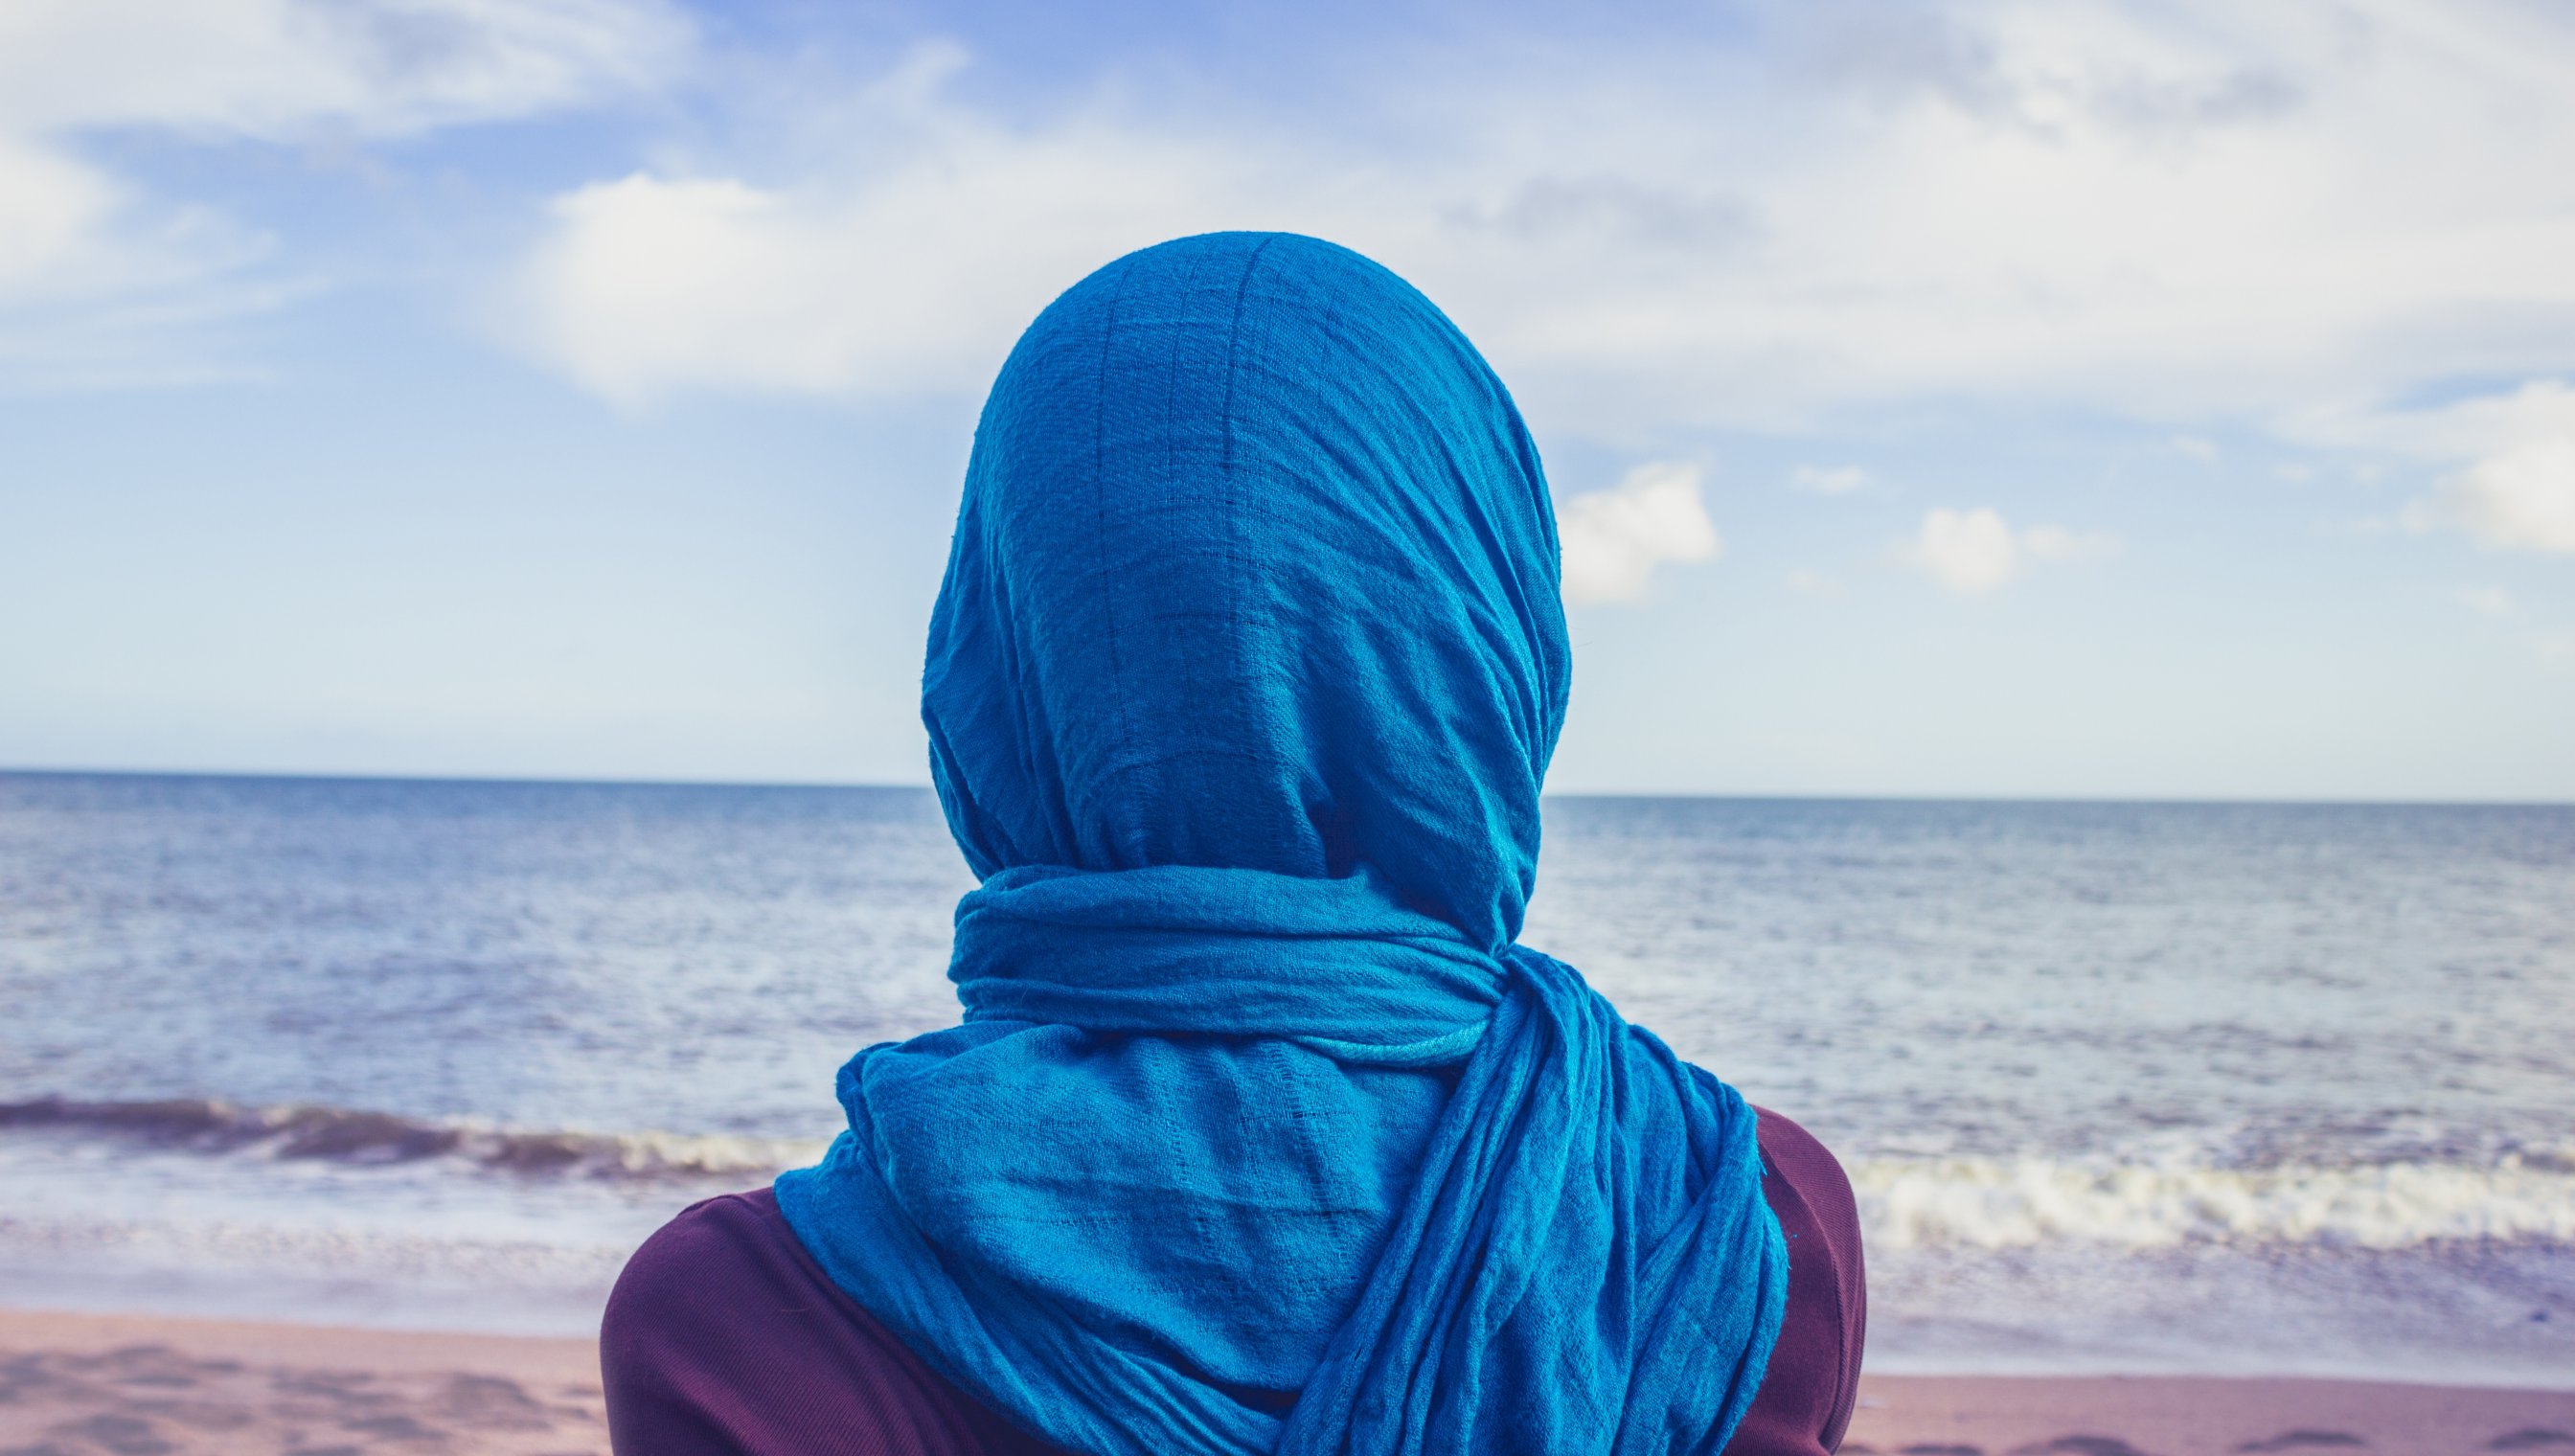 Kvinne med blå slør på hode, som står på en strand å ser ut over havet